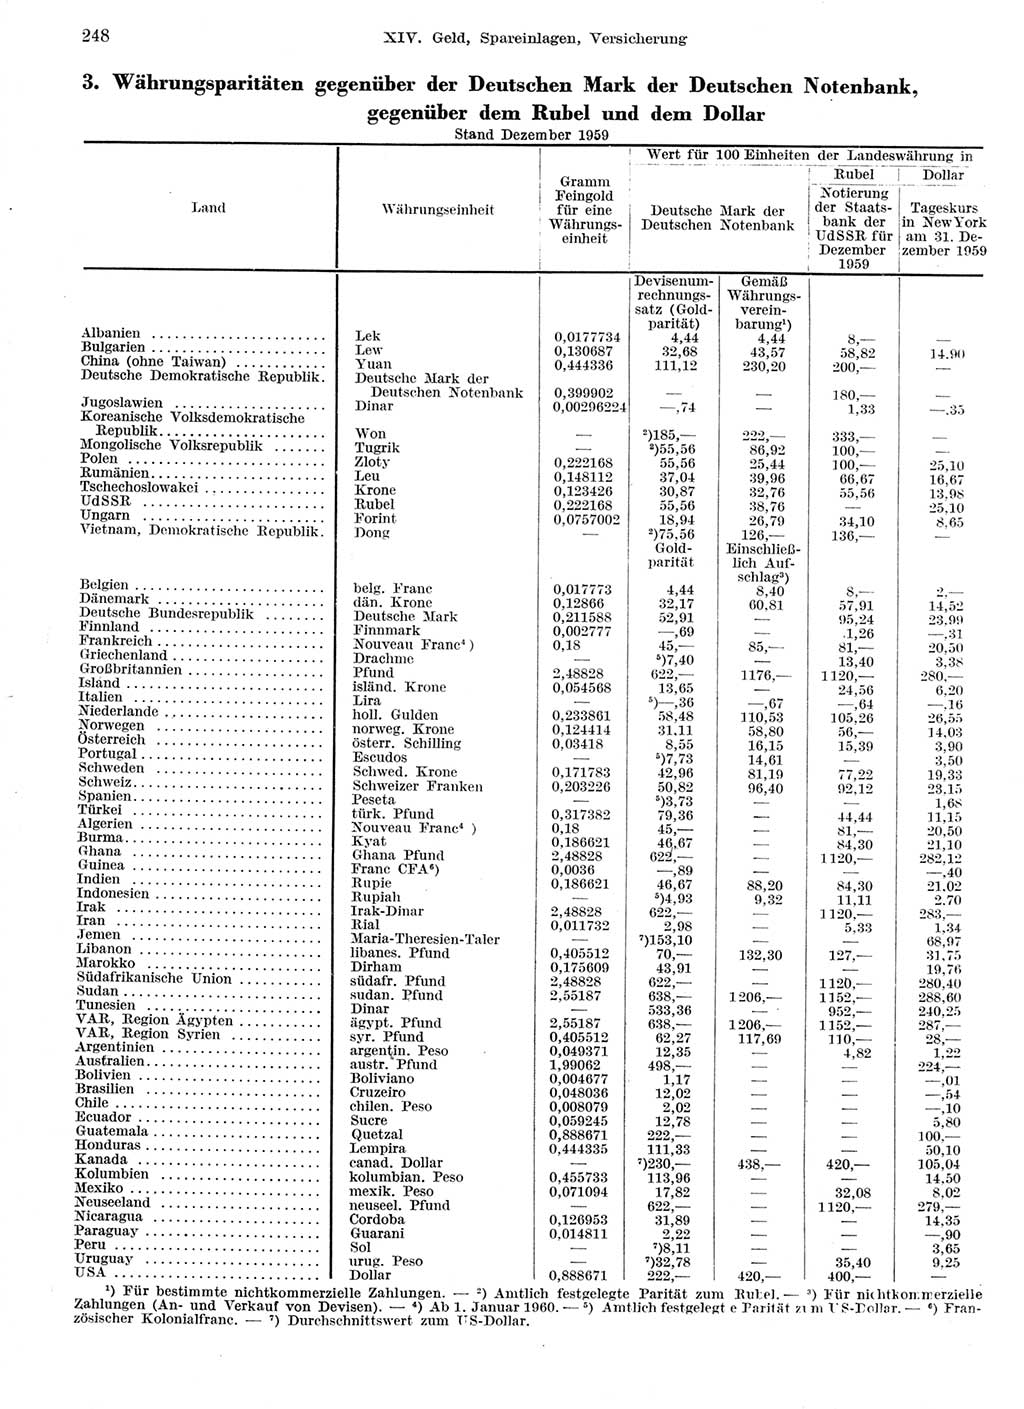 Statistisches Jahrbuch der Deutschen Demokratischen Republik (DDR) 1959, Seite 248 (Stat. Jb. DDR 1959, S. 248)